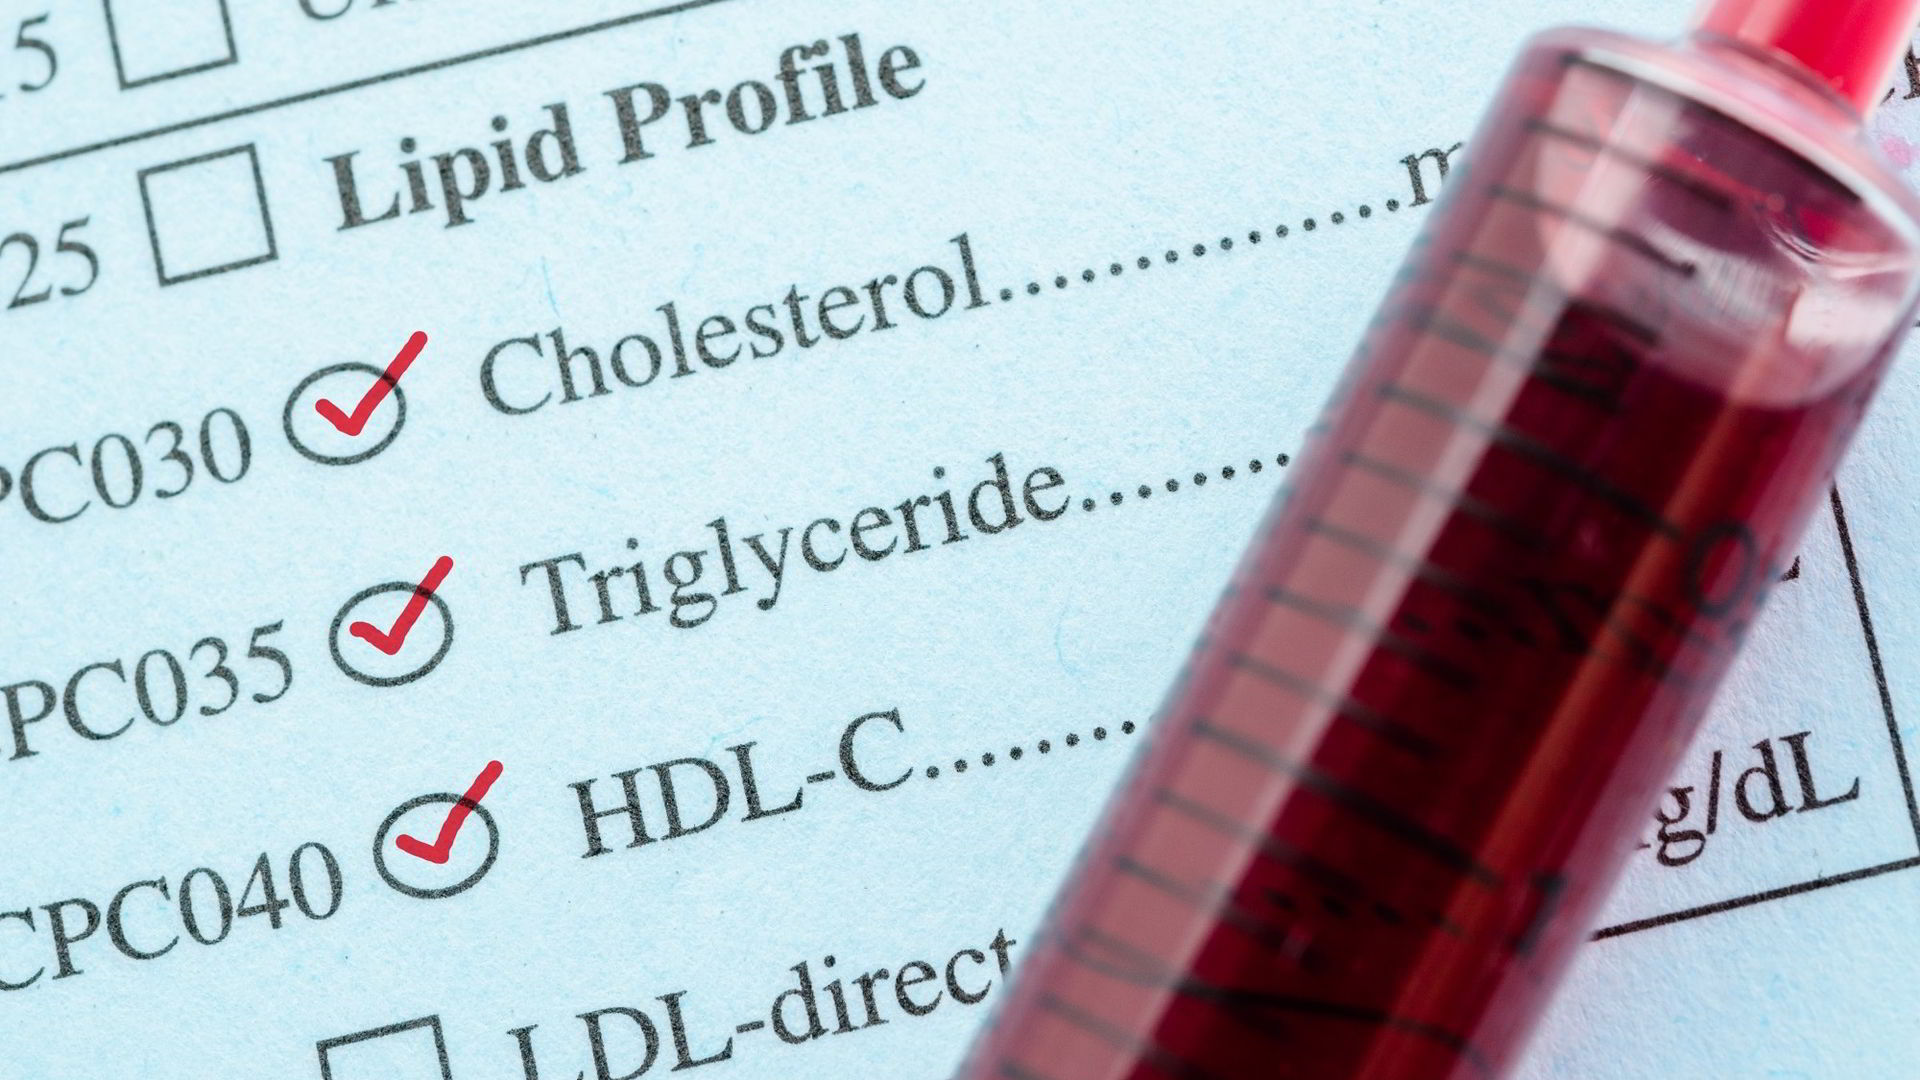 Test na HDL cholesterol.